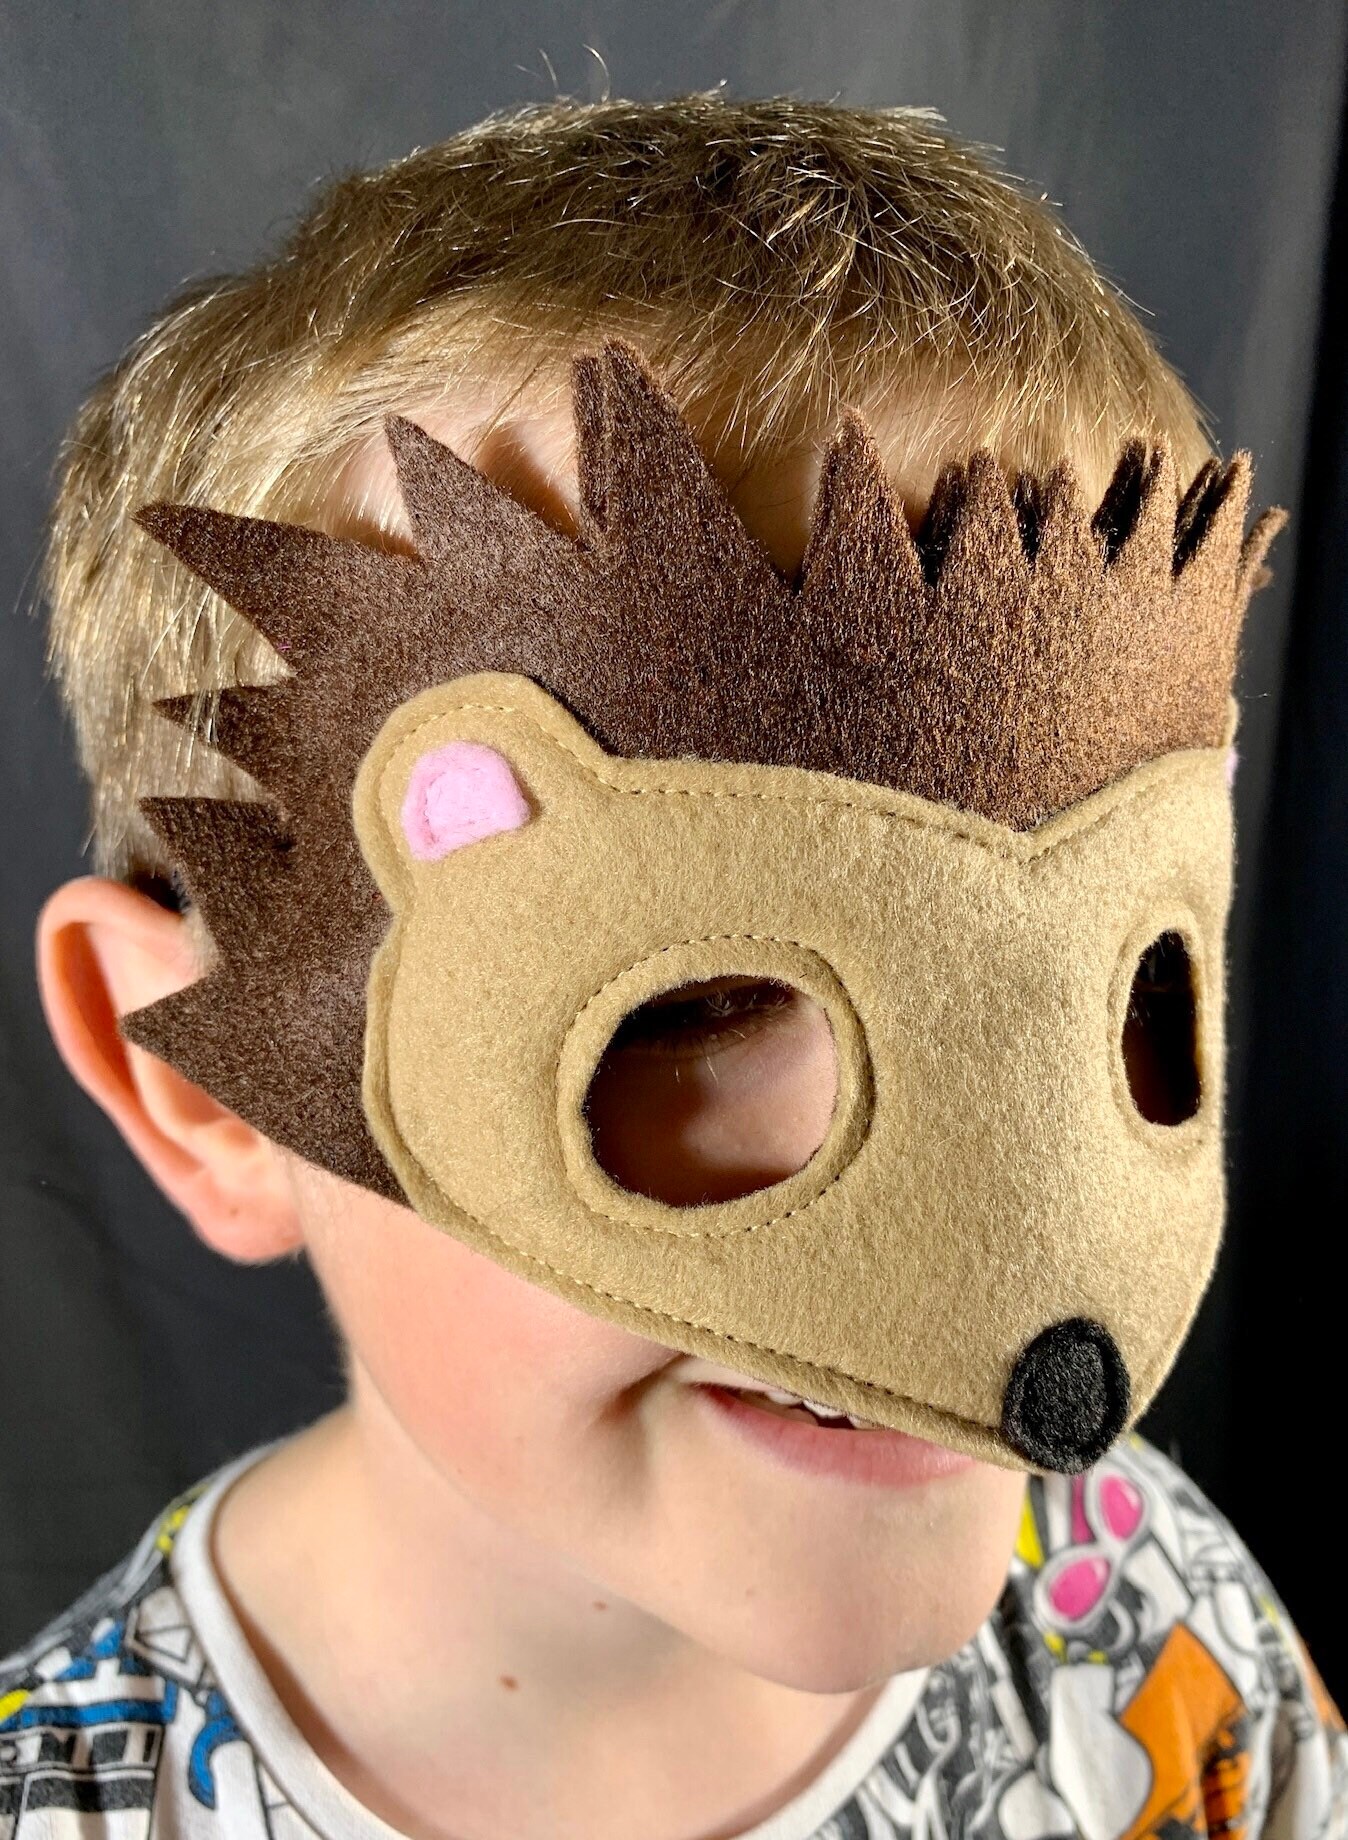 Máscara de erizo regalo de erizo máscara de animal relleno de medias para niños Ropa Ropa unisex para niños Disfraces niños disfrazados máscara de fieltro para niños 